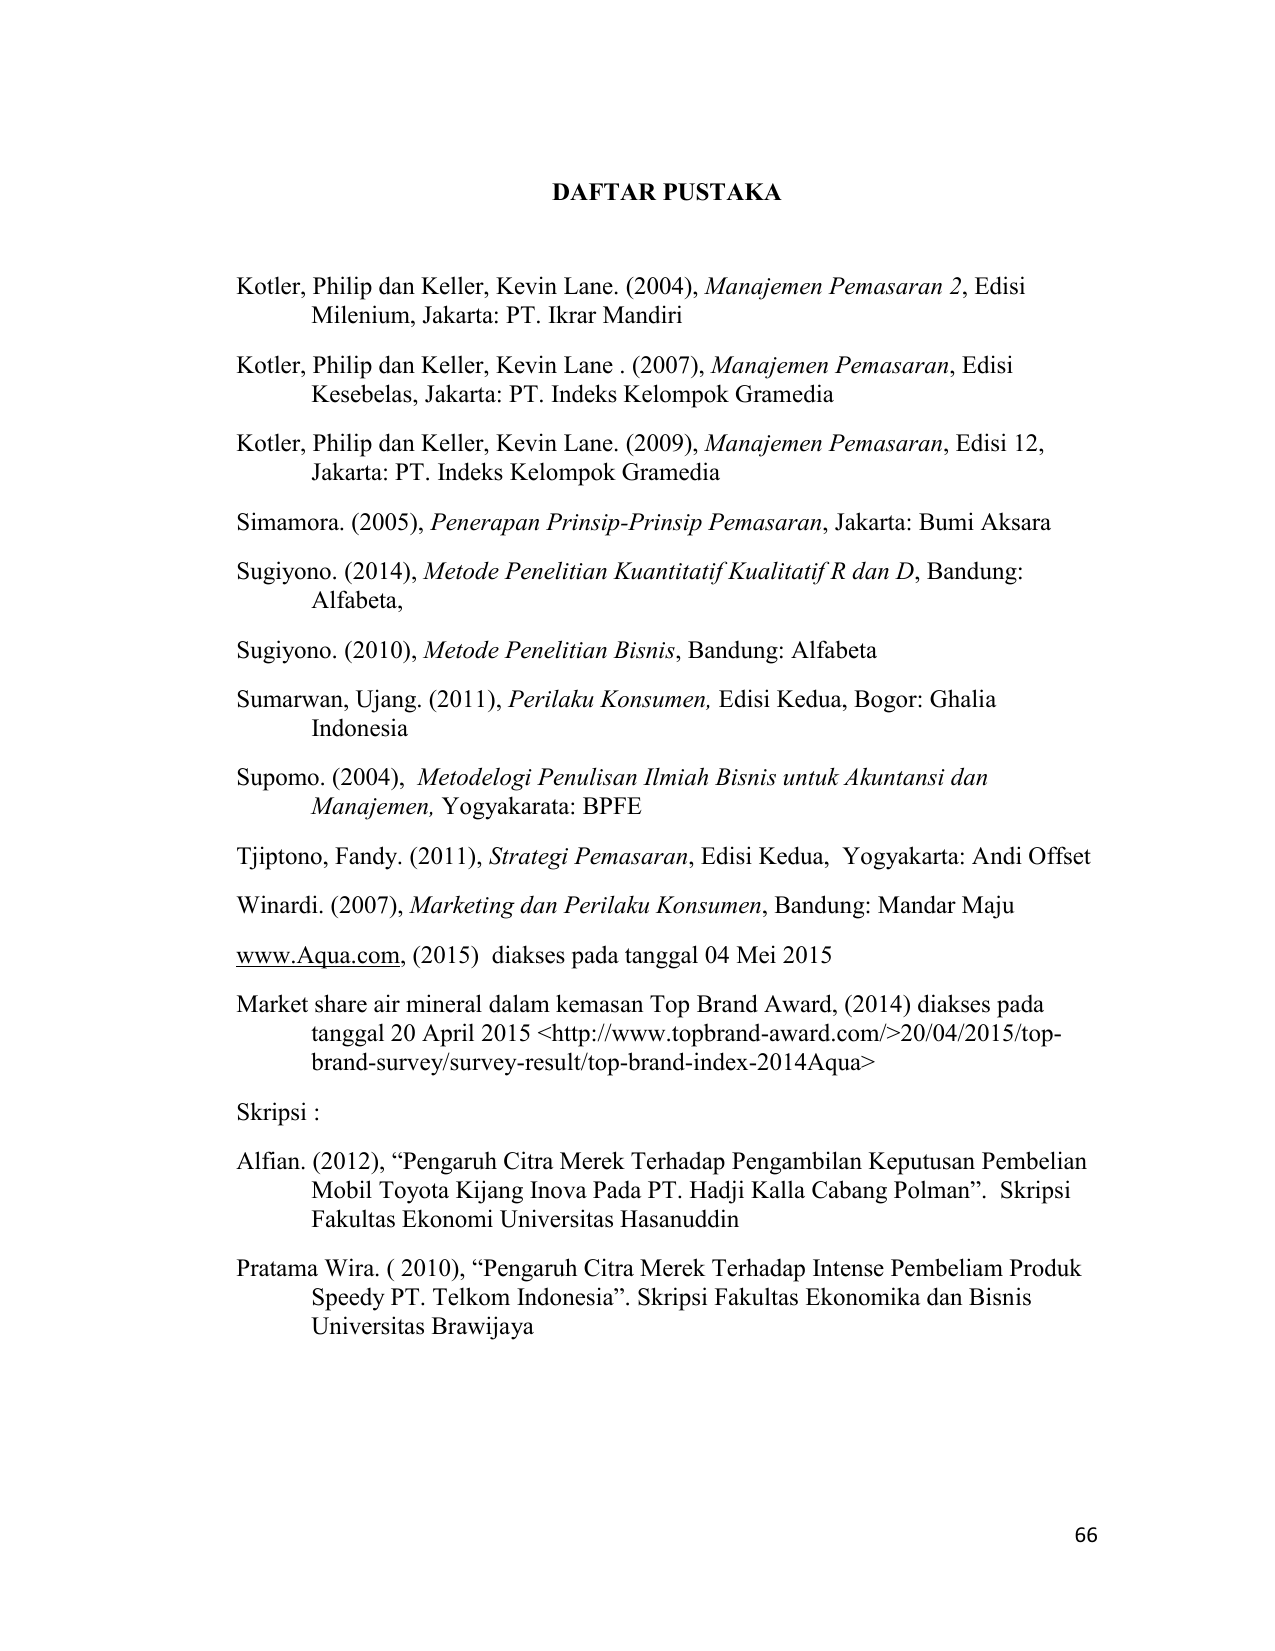 daftar isi buku manajemen pemasaran philip kotler terbaru 2014